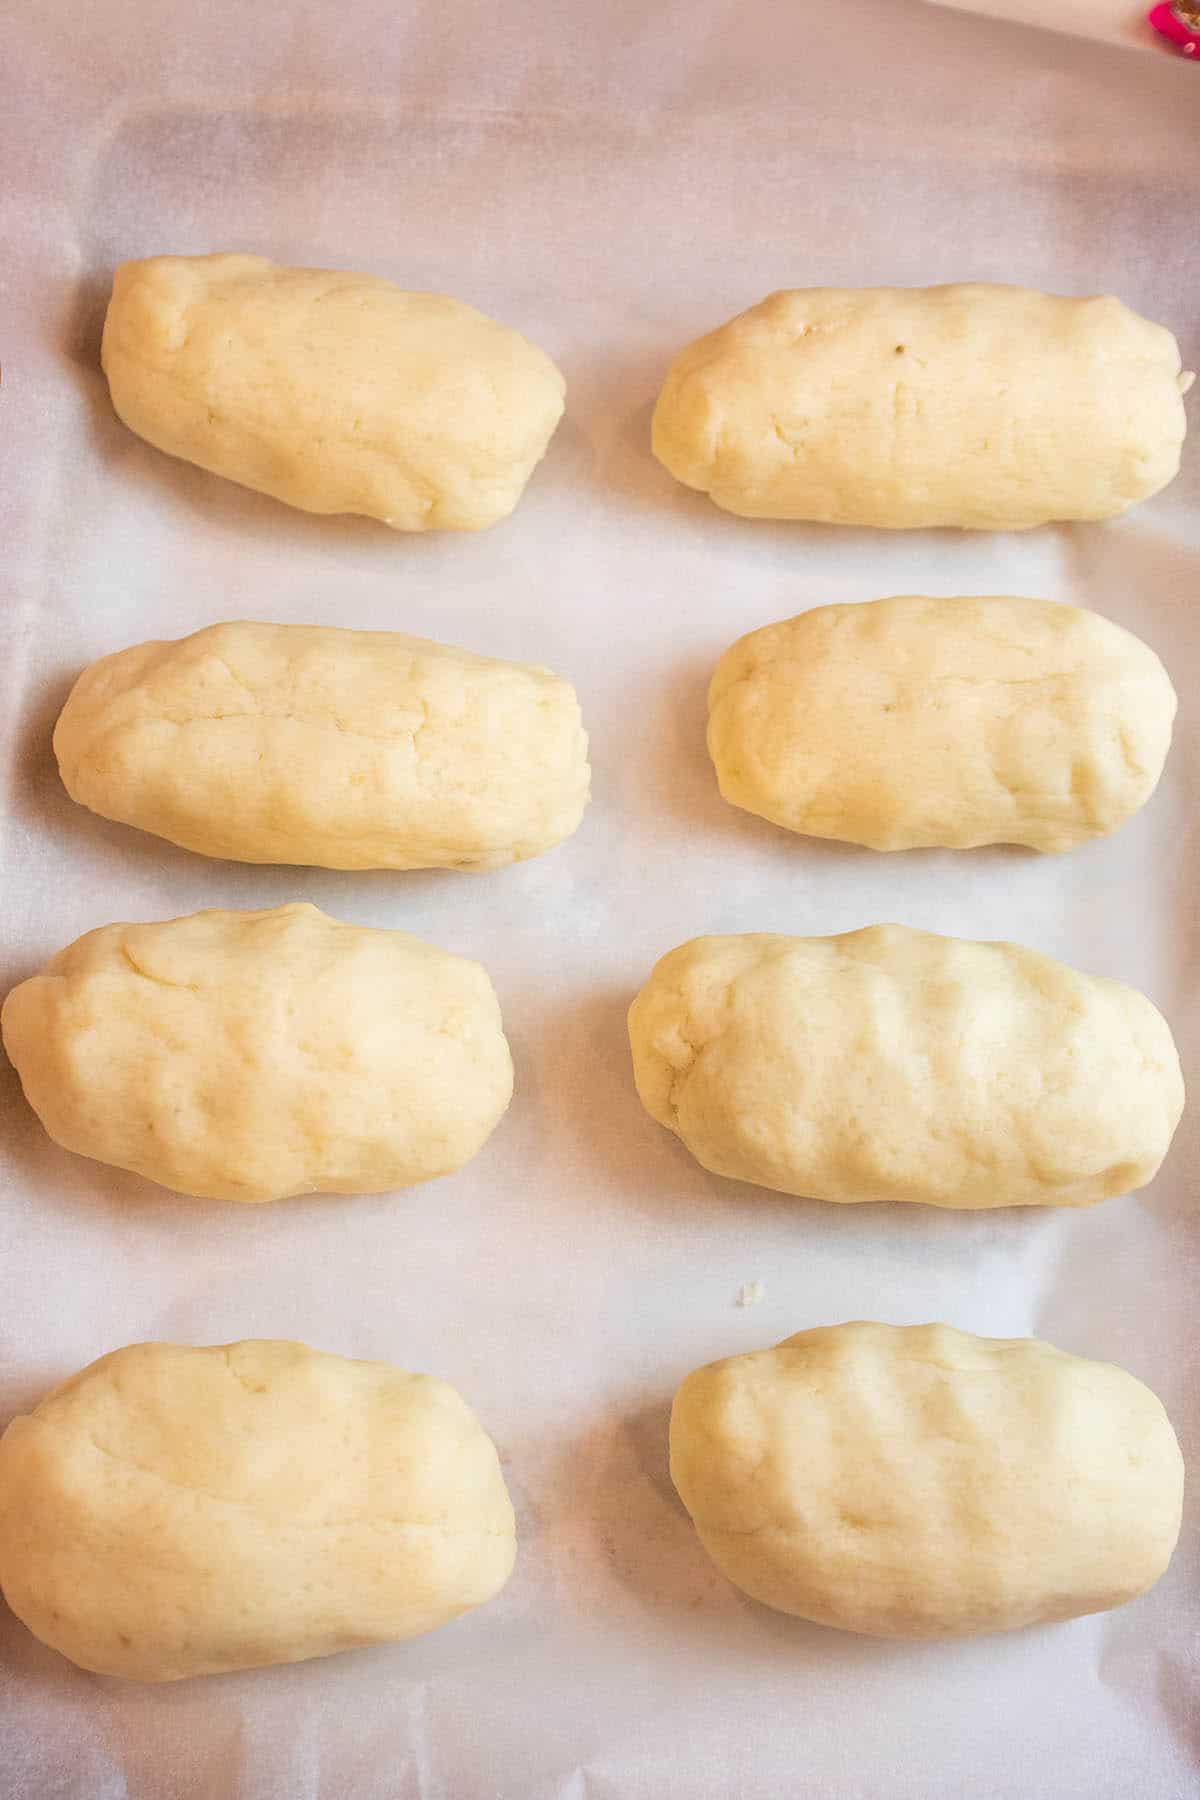 Balls of potato dough sitting on parchment paper.